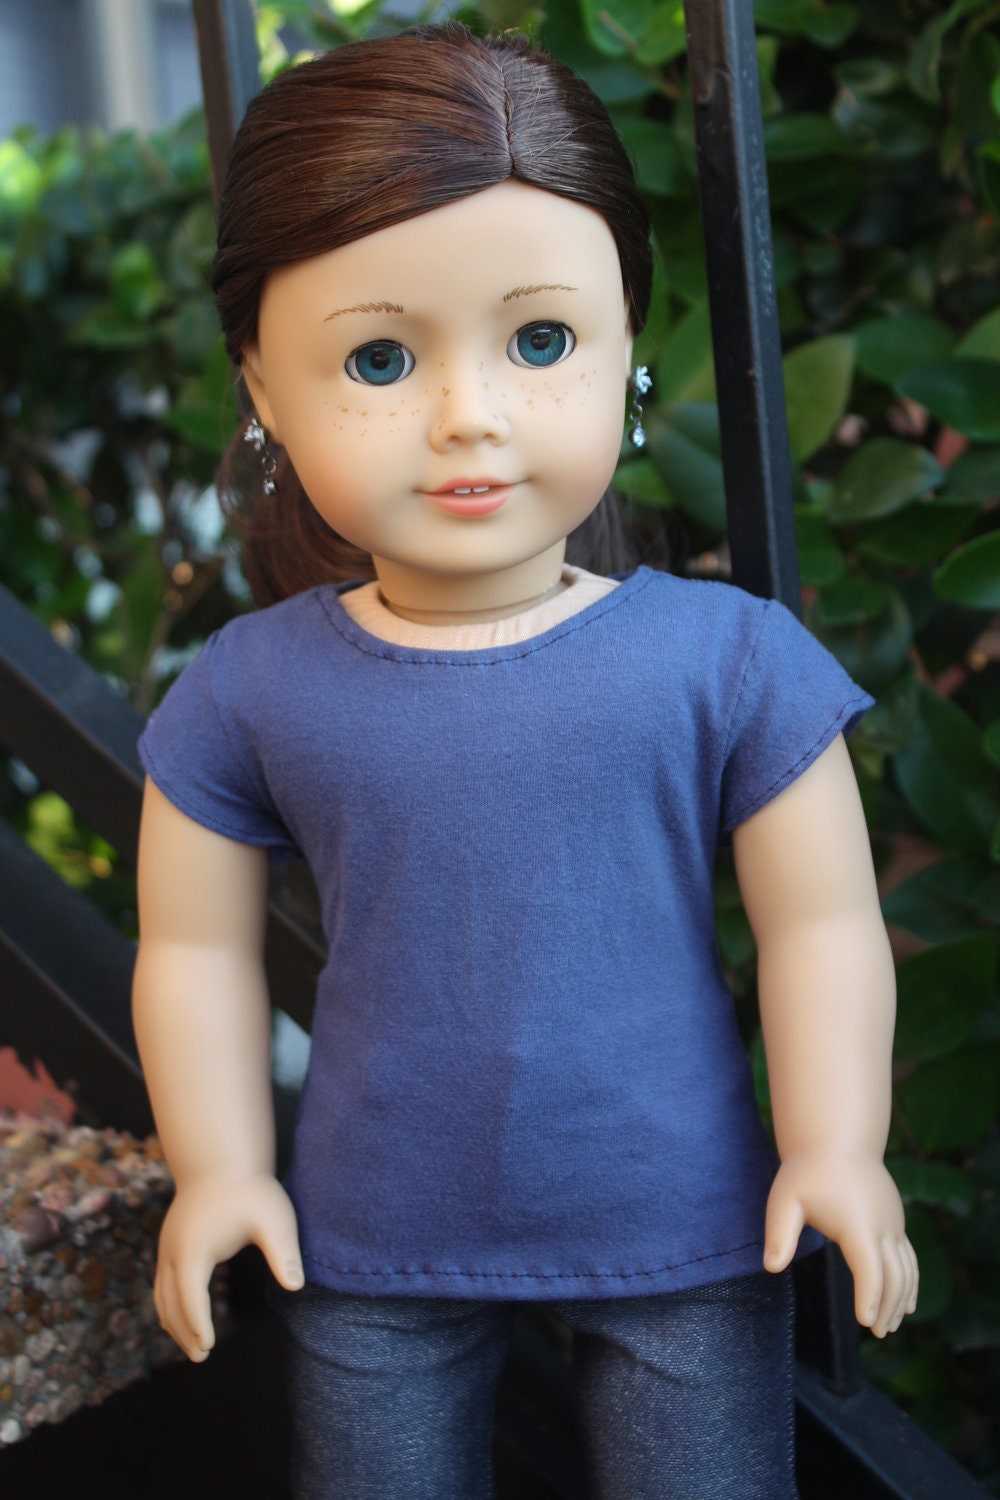 Plain Blue Tee Shirt for American Girl Dolls